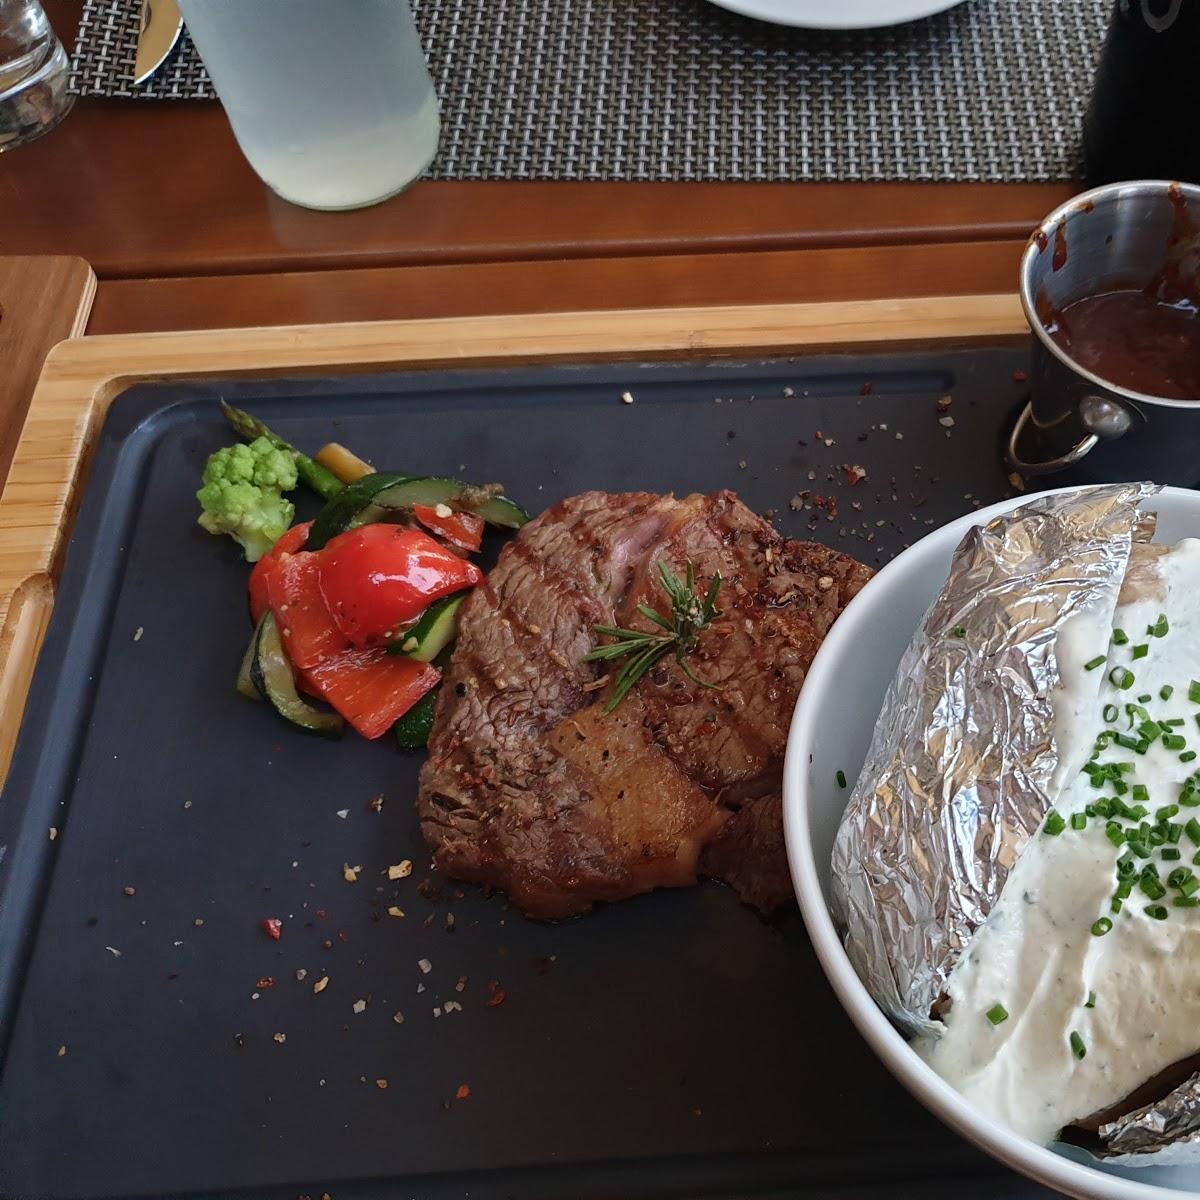 Restaurant "Die Grillerei - steak & fish" in Hof bei Salzburg